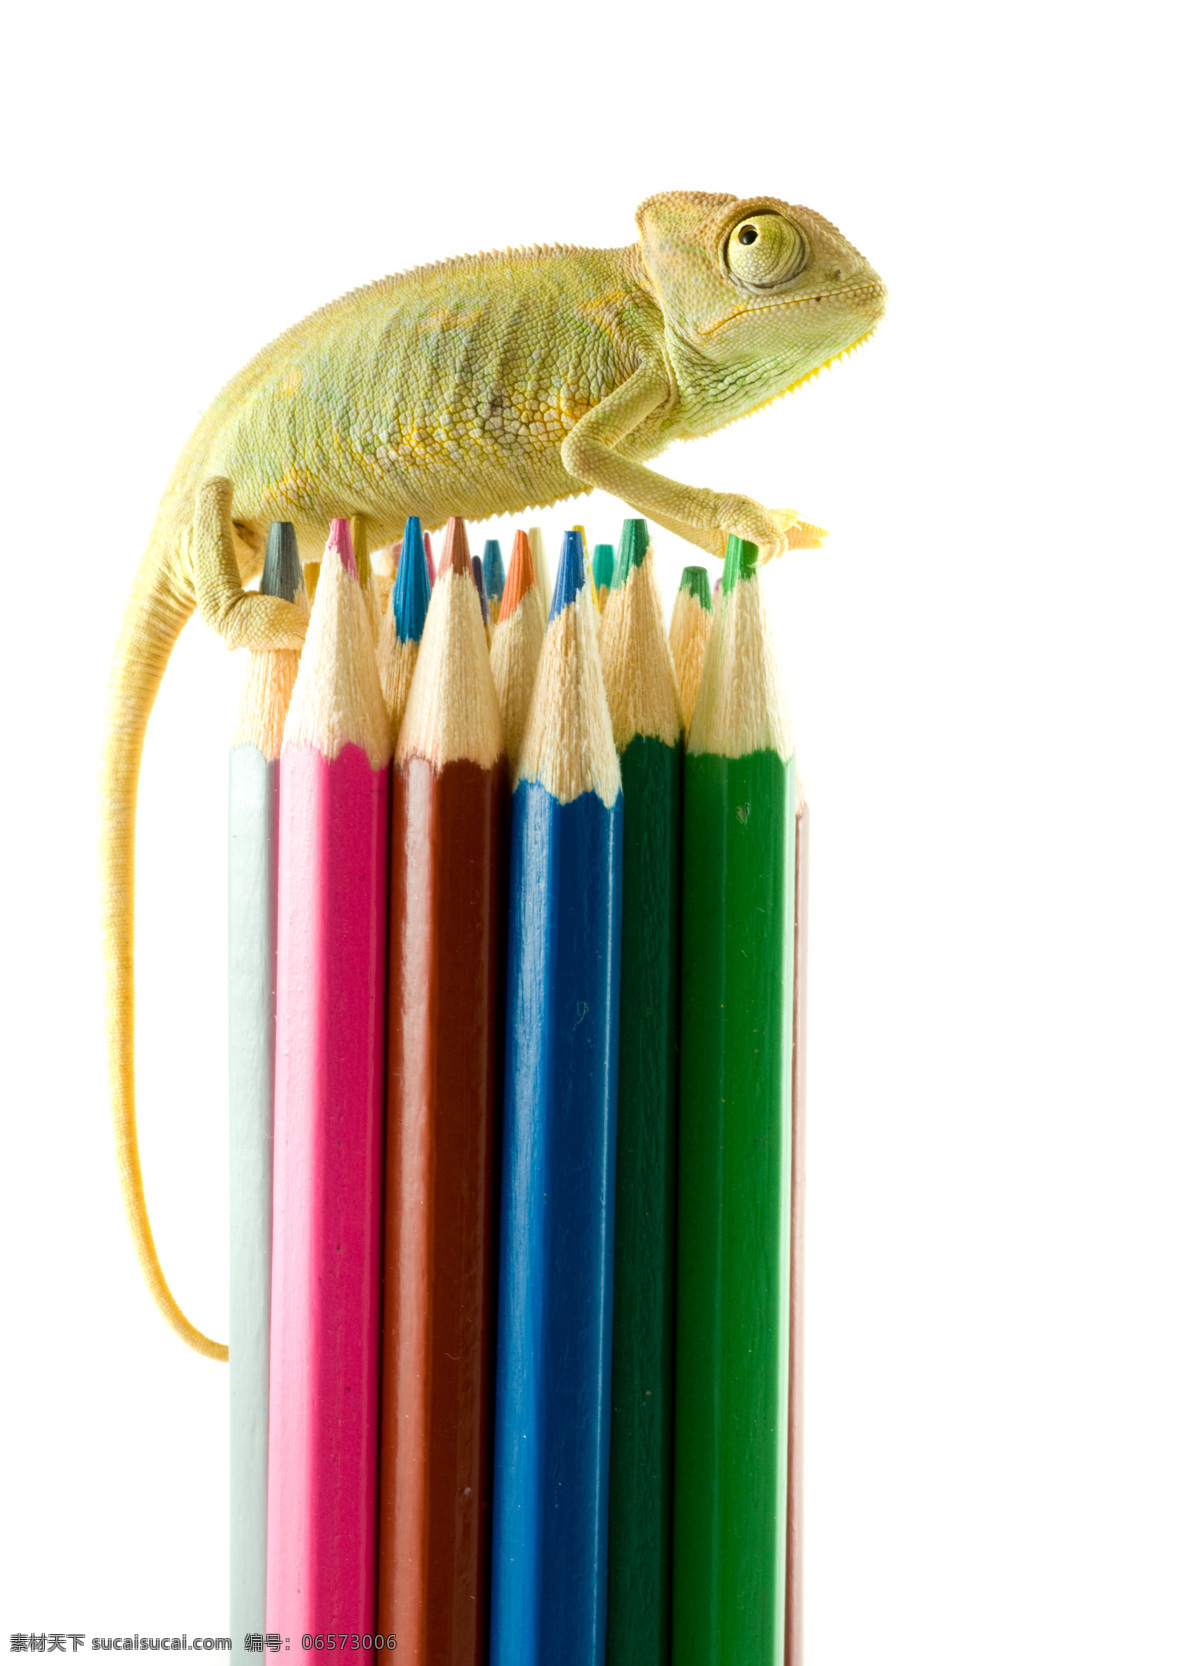 变色龙 画笔 蜥蜴 彩色铅笔 动物世界 陆地动物 生物世界